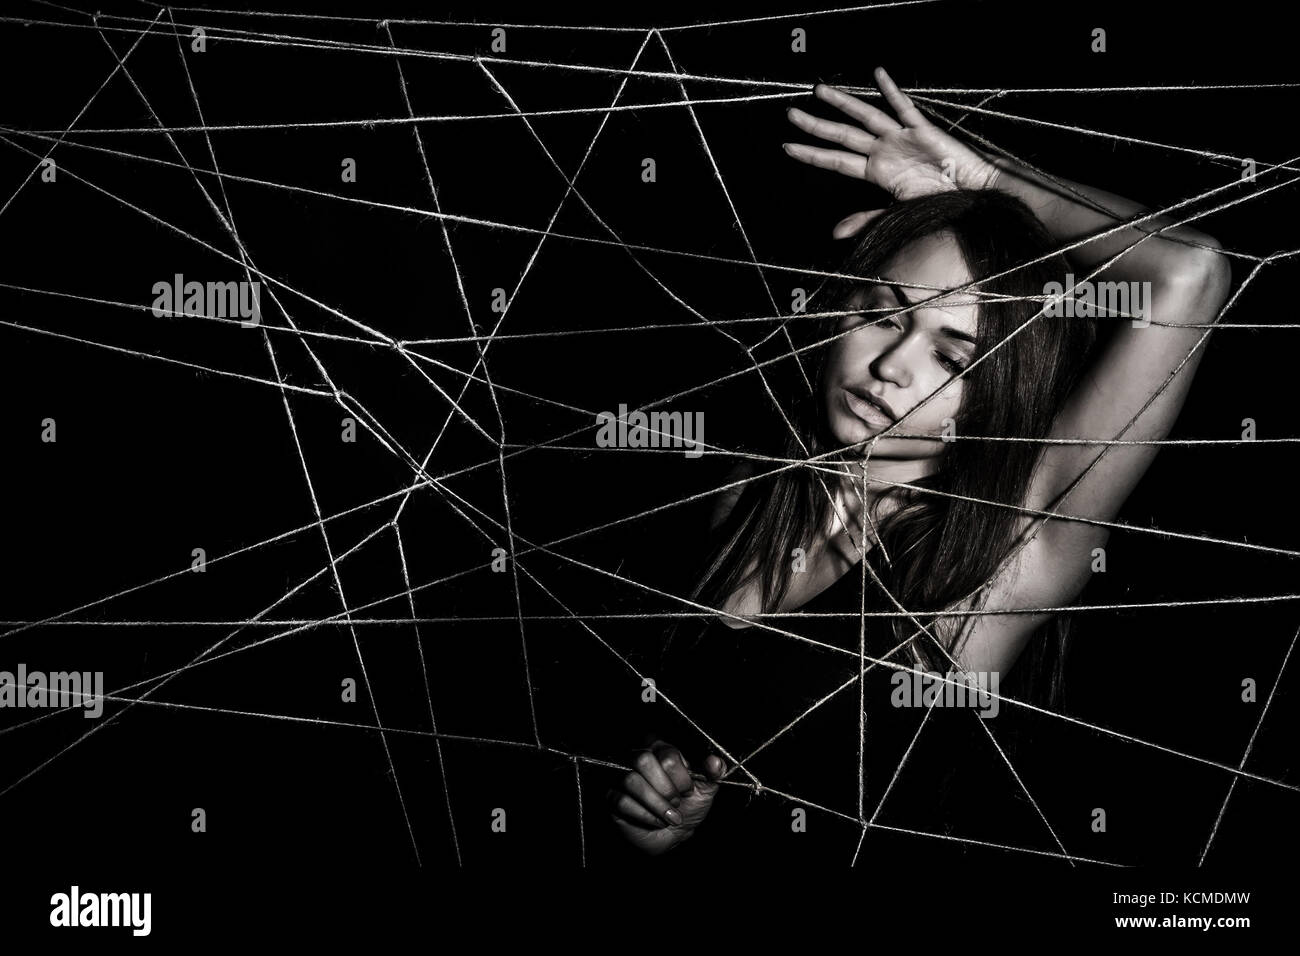 Junge Frau verwickelt Das Netz der Seile über schwarzen Hintergrund Stockfoto